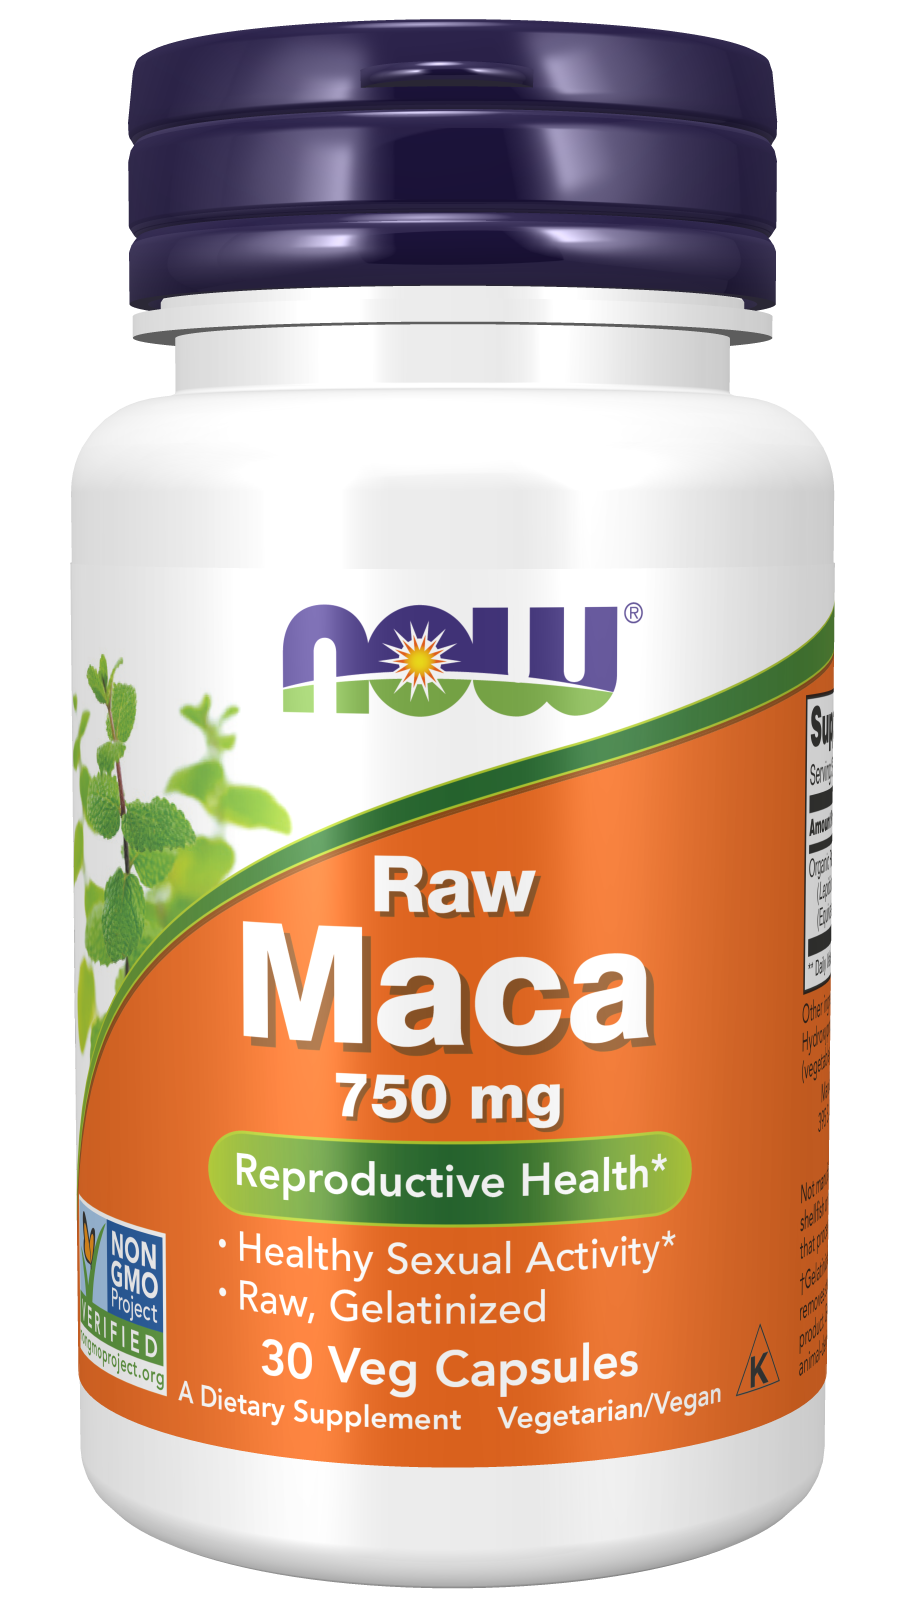 Maca 750 mg Raw - 30 Veg Capsules